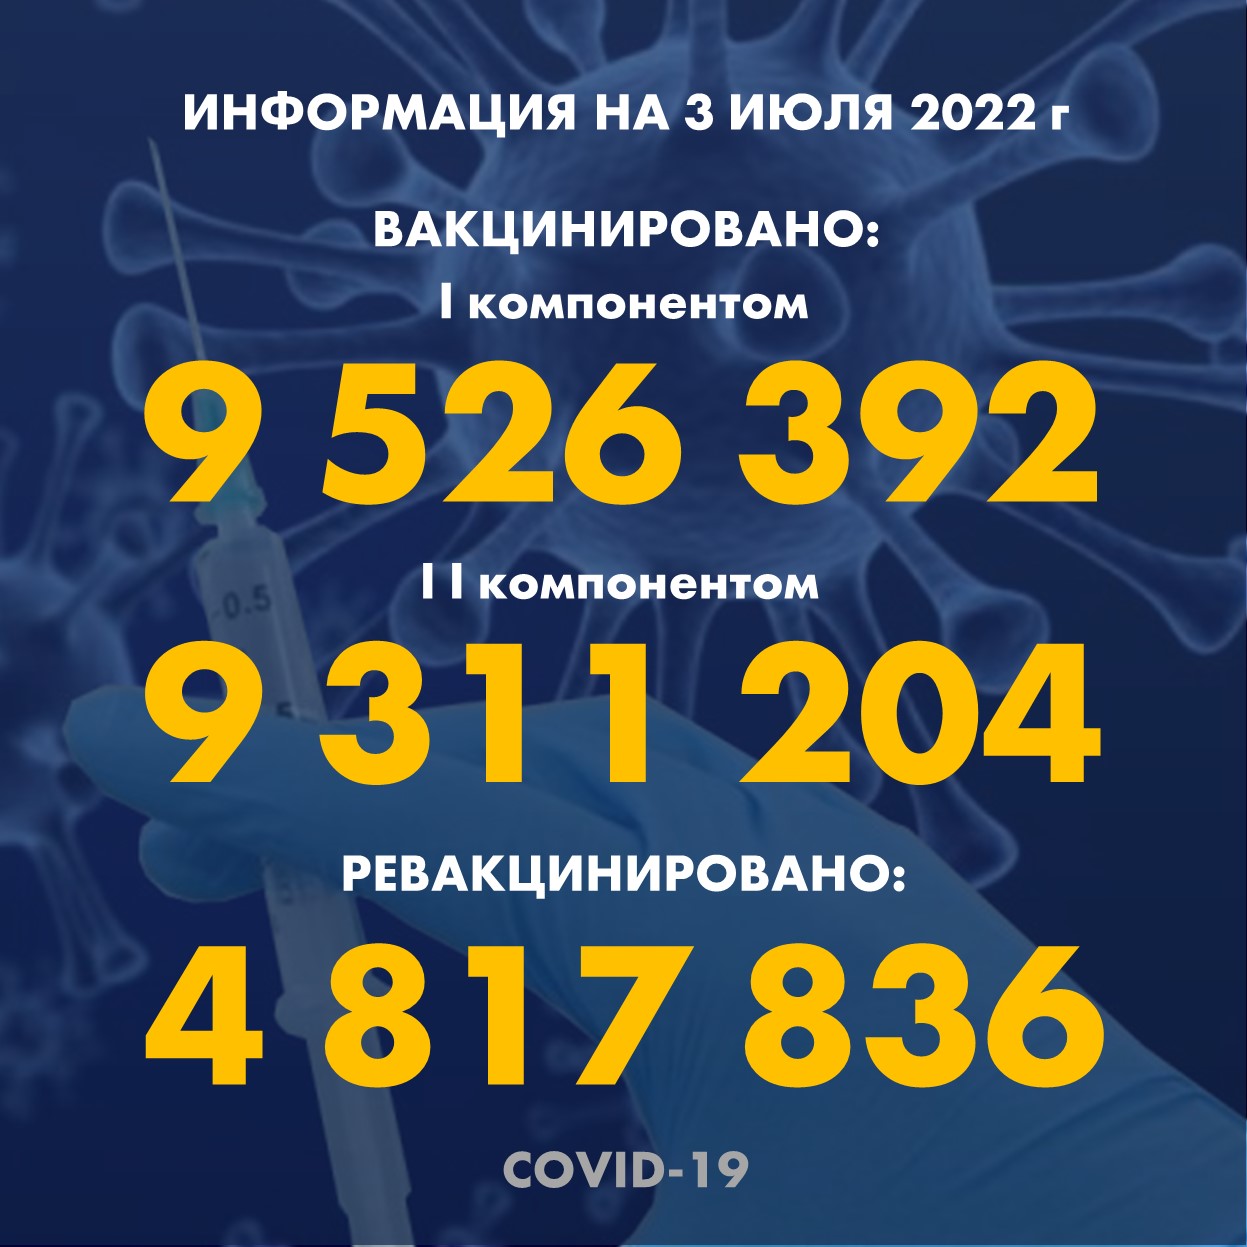 I компонентом 9 526 392 человек провакцинировано в Казахстане на 3.07.2022 г, II компонентом 9 311 204 человек. Ревакцинировано – 4 817 836